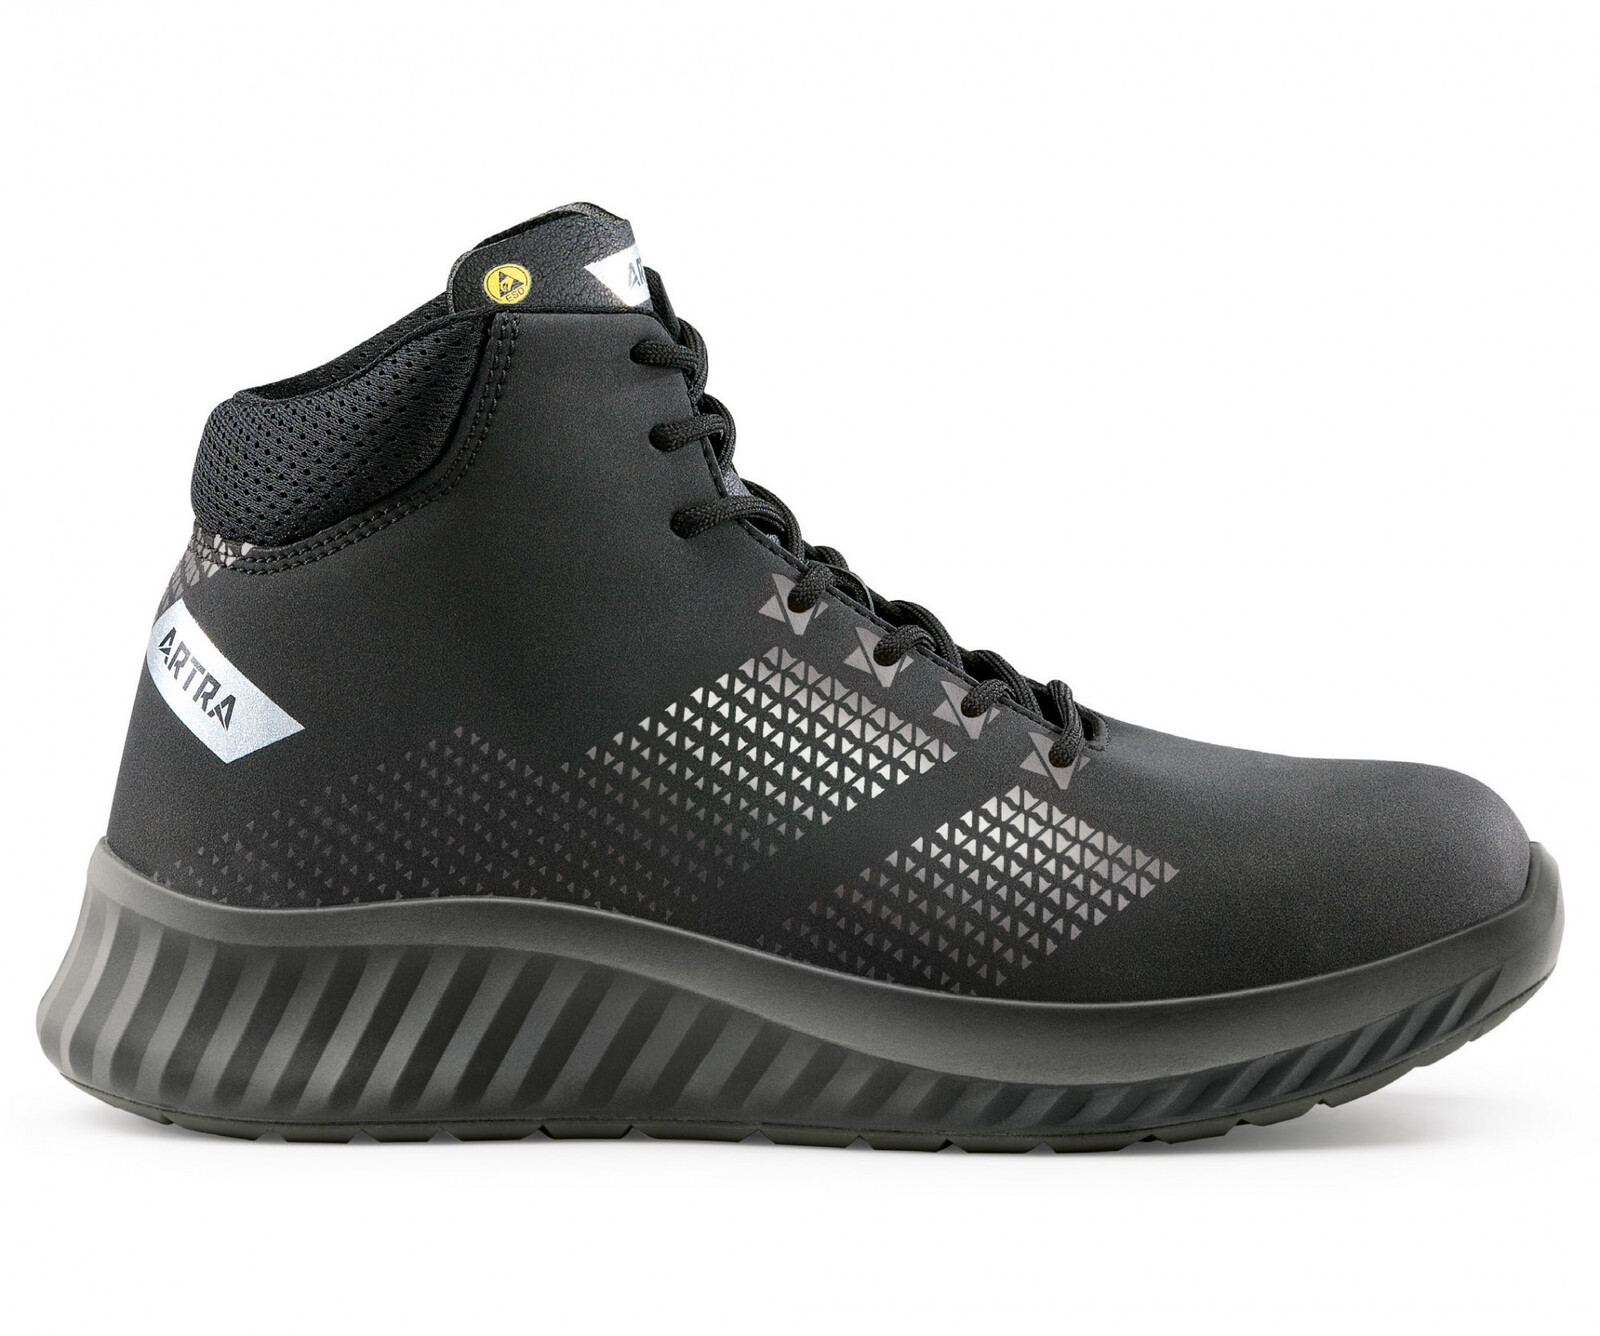 Bezpečnostná členková obuv Artra Aroserio 750 616560 S3 SRC ESD - veľkosť: 46, farba: čierna/sivá